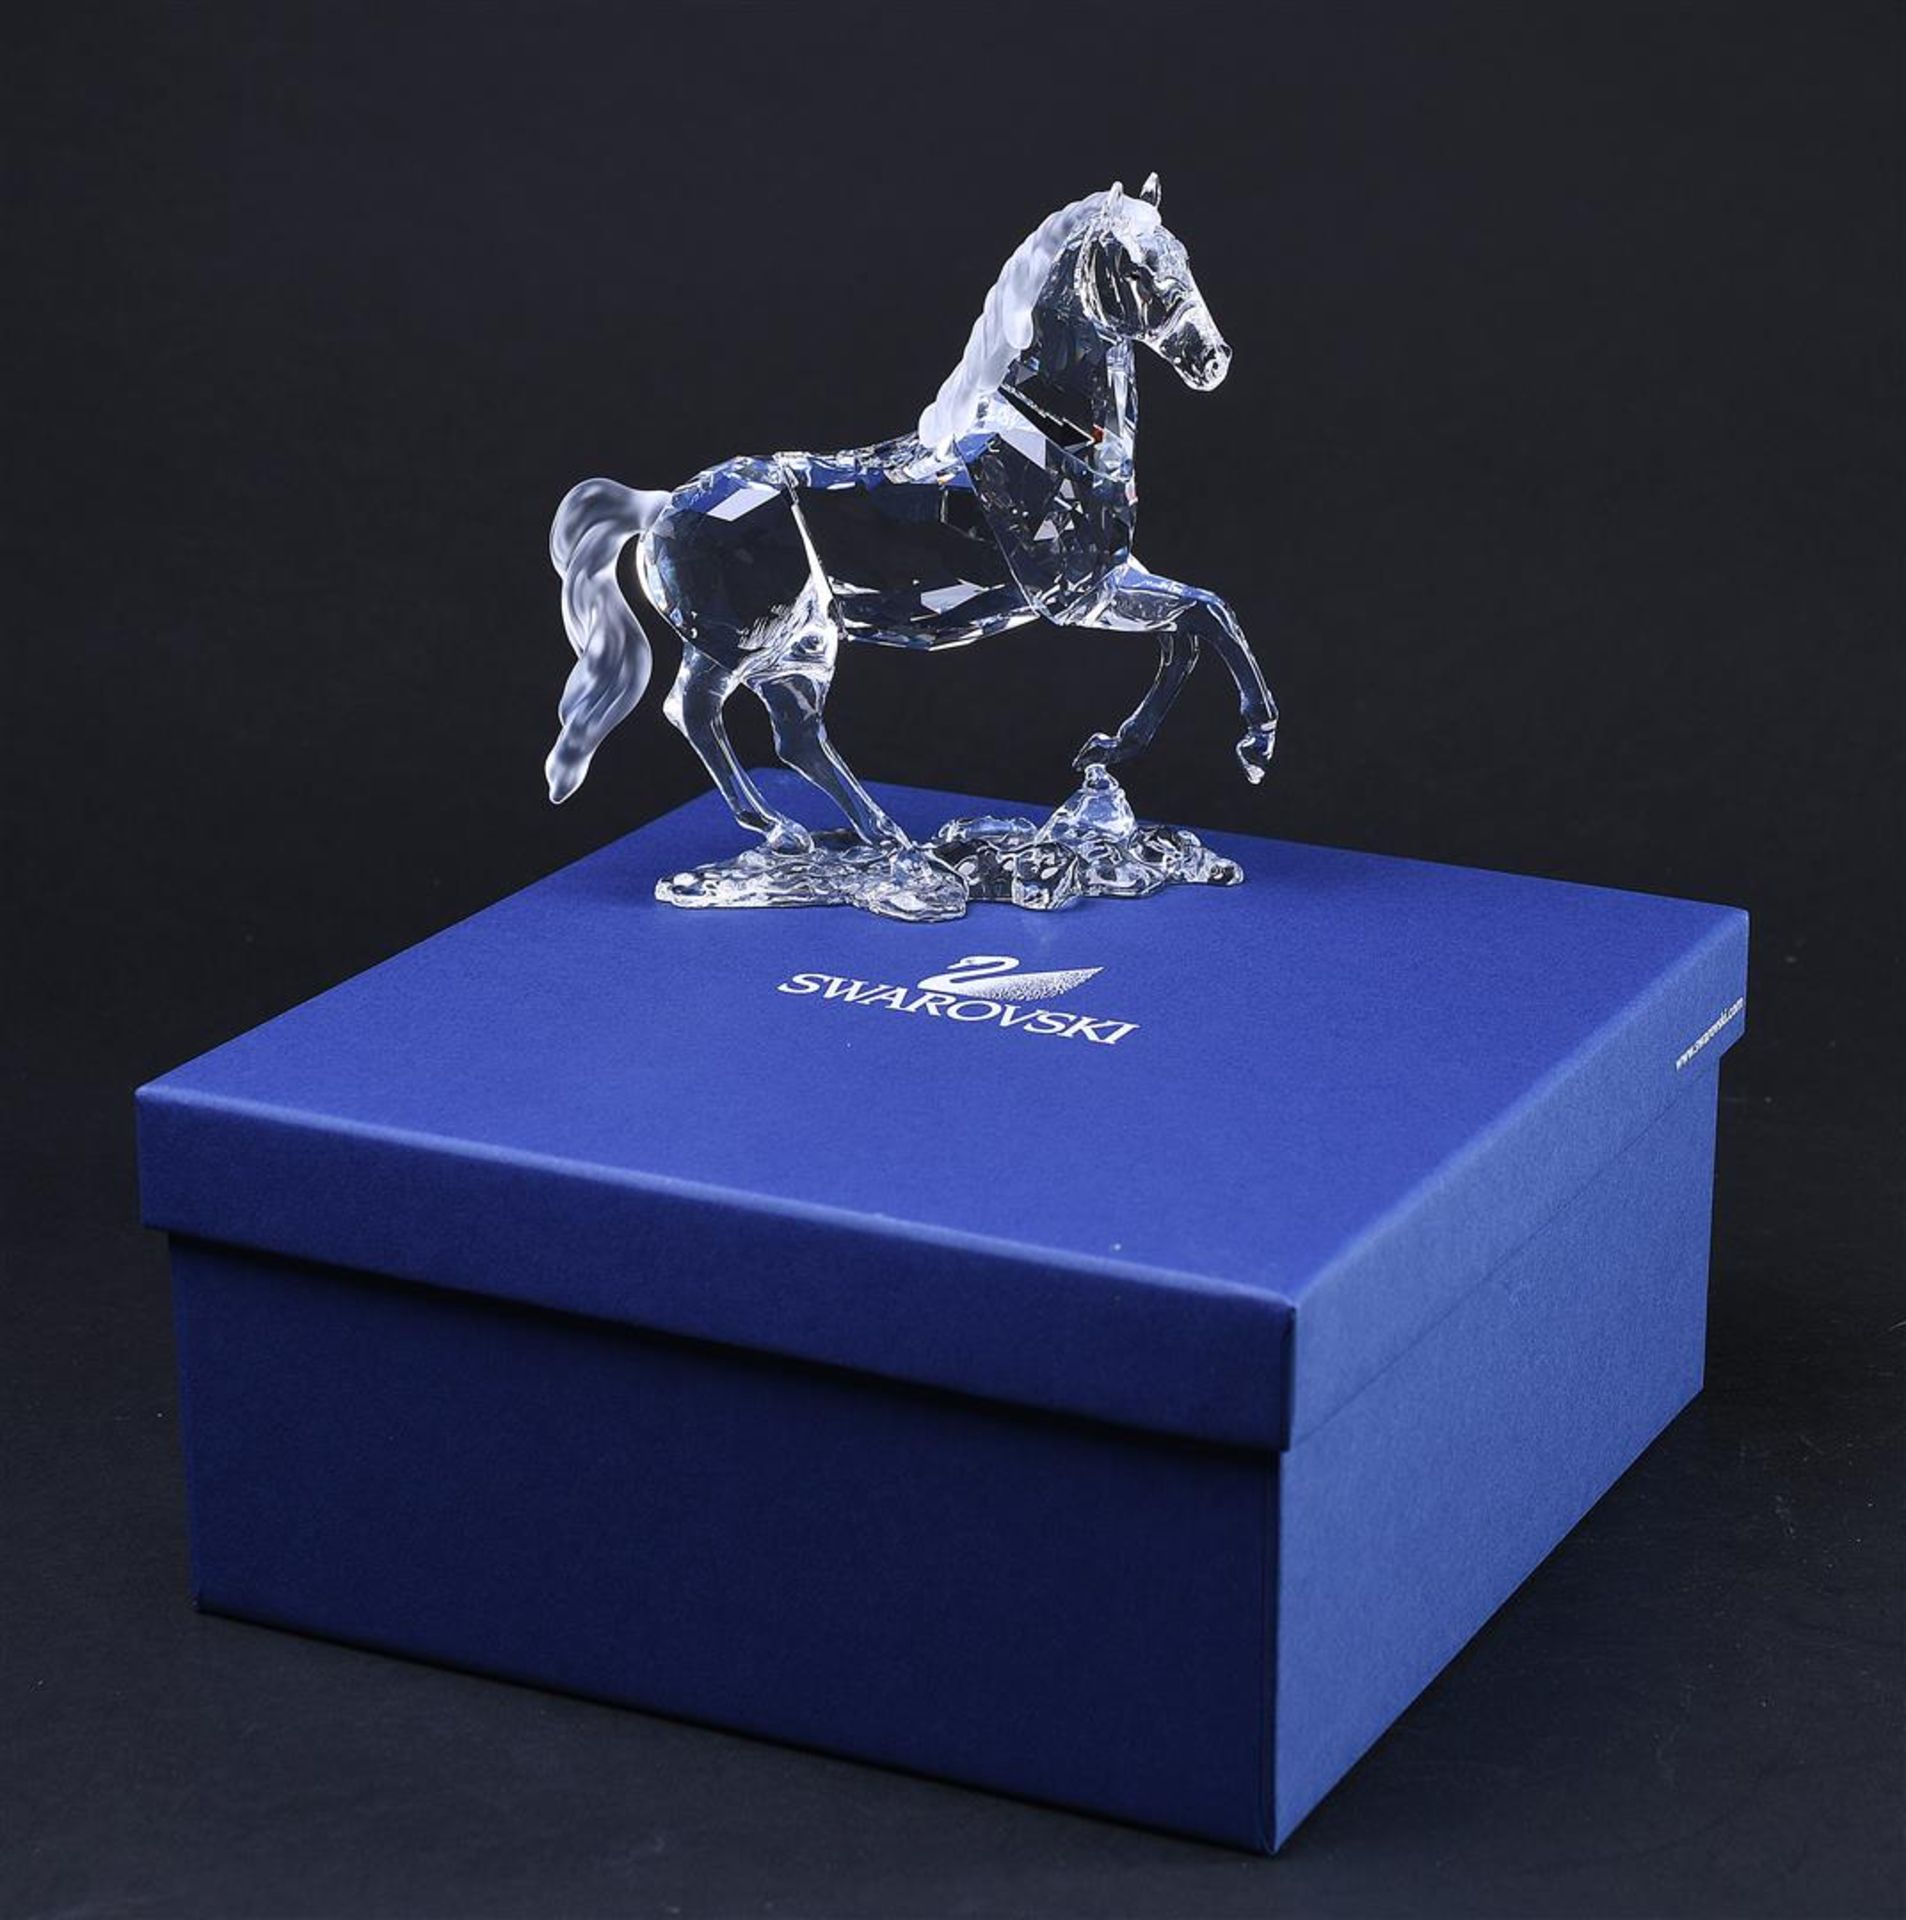 Swarovski, Stallion, Year of issue 2011, 898508, Includes original box.
14,4 x 14,6 cm. - Bild 6 aus 6